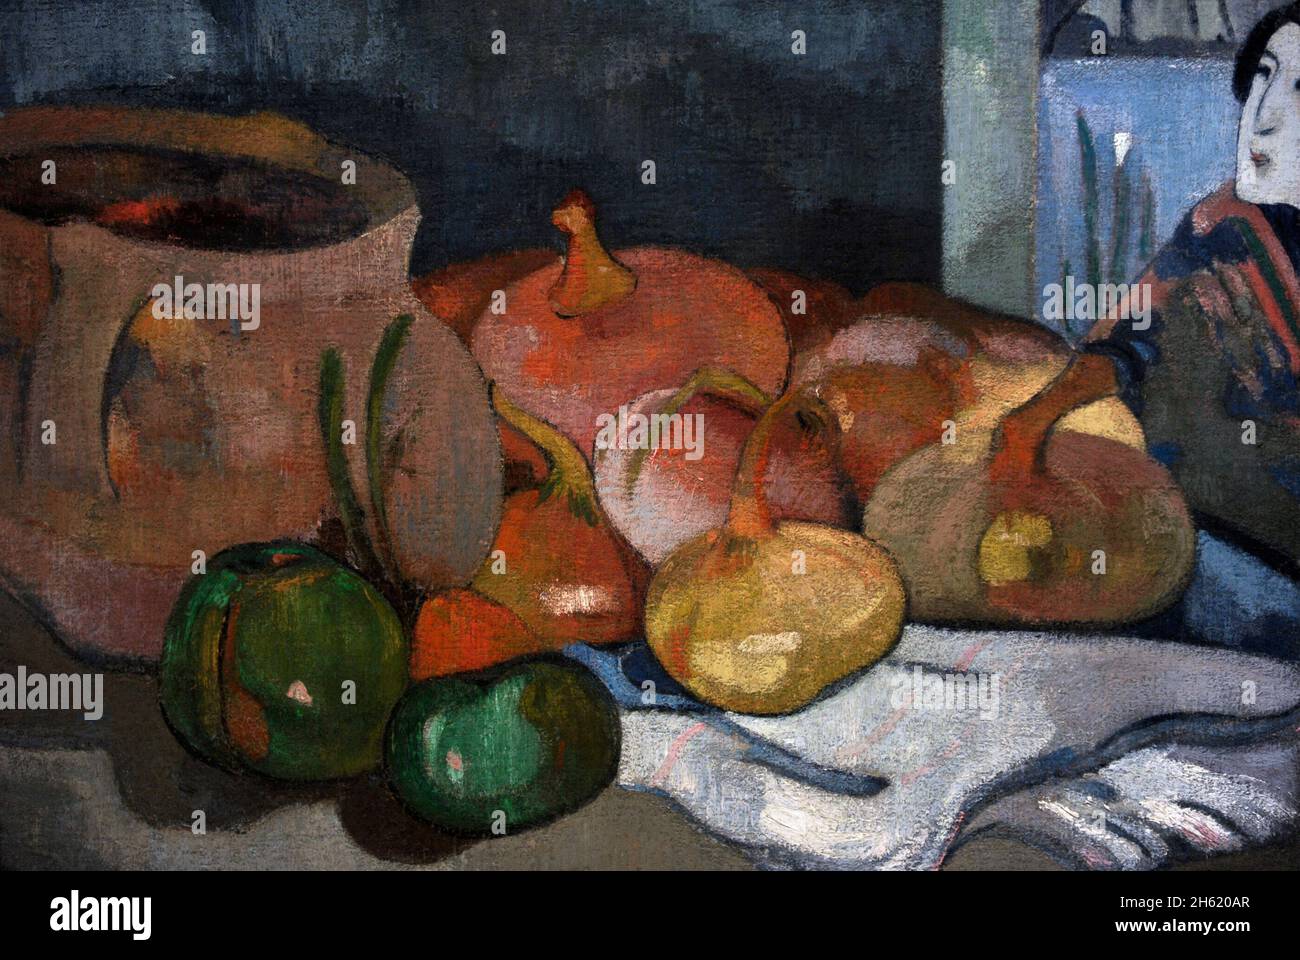 Paul Gauguin (1848-1903).Peintre post-impressionniste français.Encore la vie avec les oignons et le bois de coupe japonais, ca.1889. Huile sur toile (40,5 x 51,5 cm).NY Carlsberg Glyptotek.Copenhague, Danemark. Banque D'Images